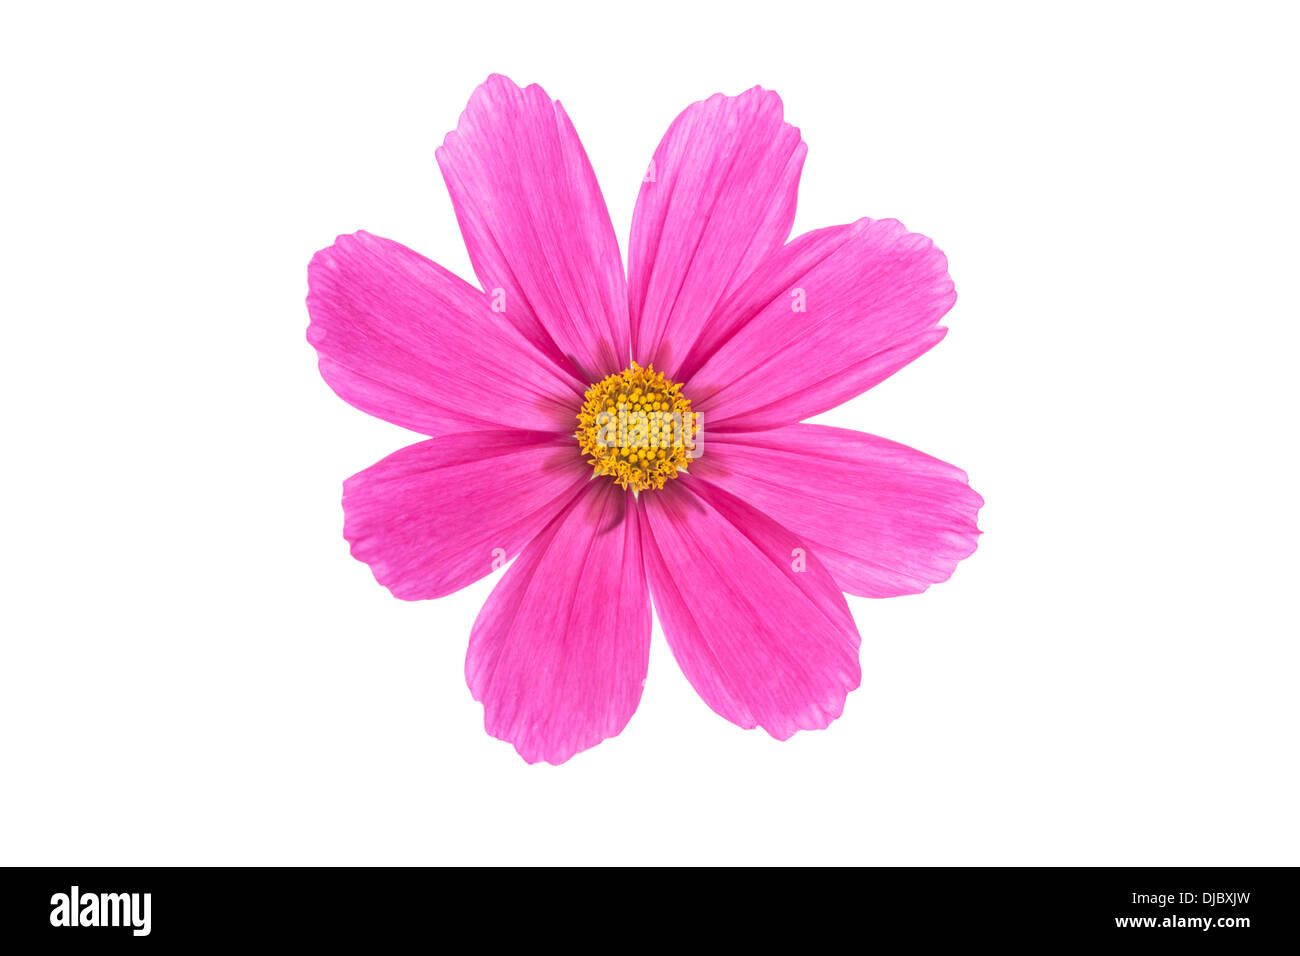 Cerise Pink Cosmos Blume isoliert auf weißem Hintergrund mit flachen Schärfentiefe und soft-Fokus die Blütenblätter der Blume Stockfoto